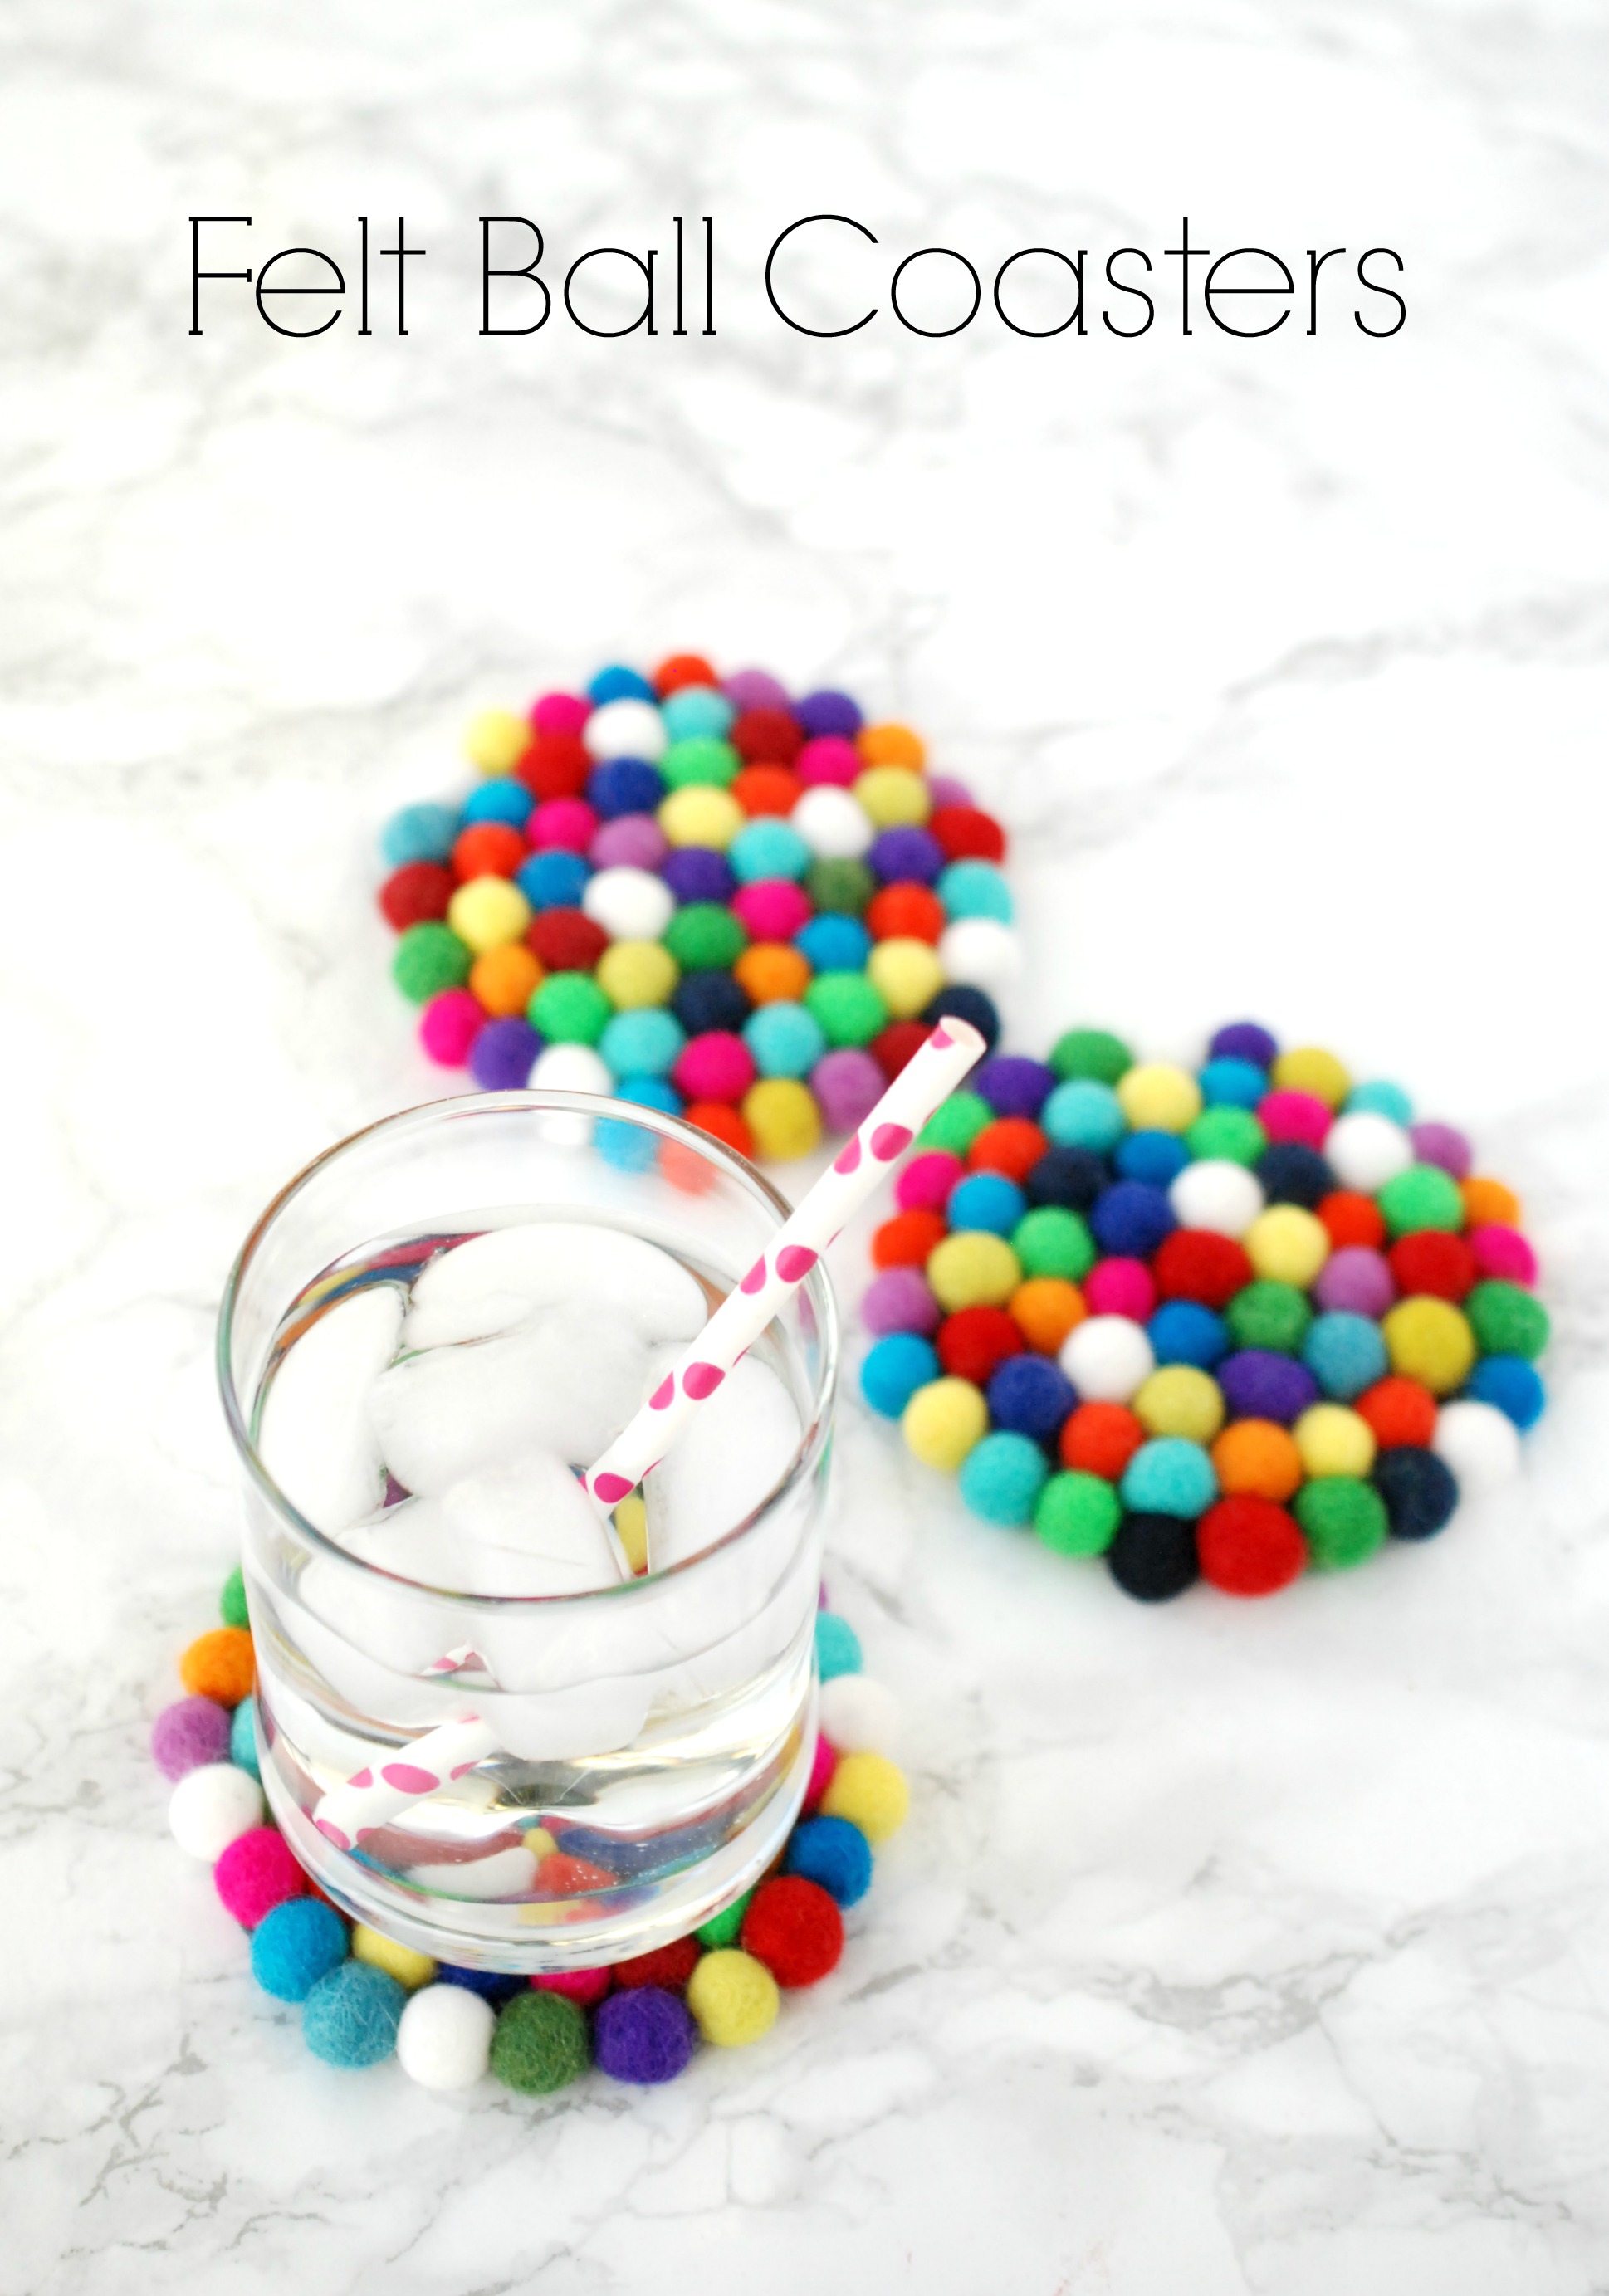 Sustainable Coasters Handmade Rainbow Felt Ball Coasters Set